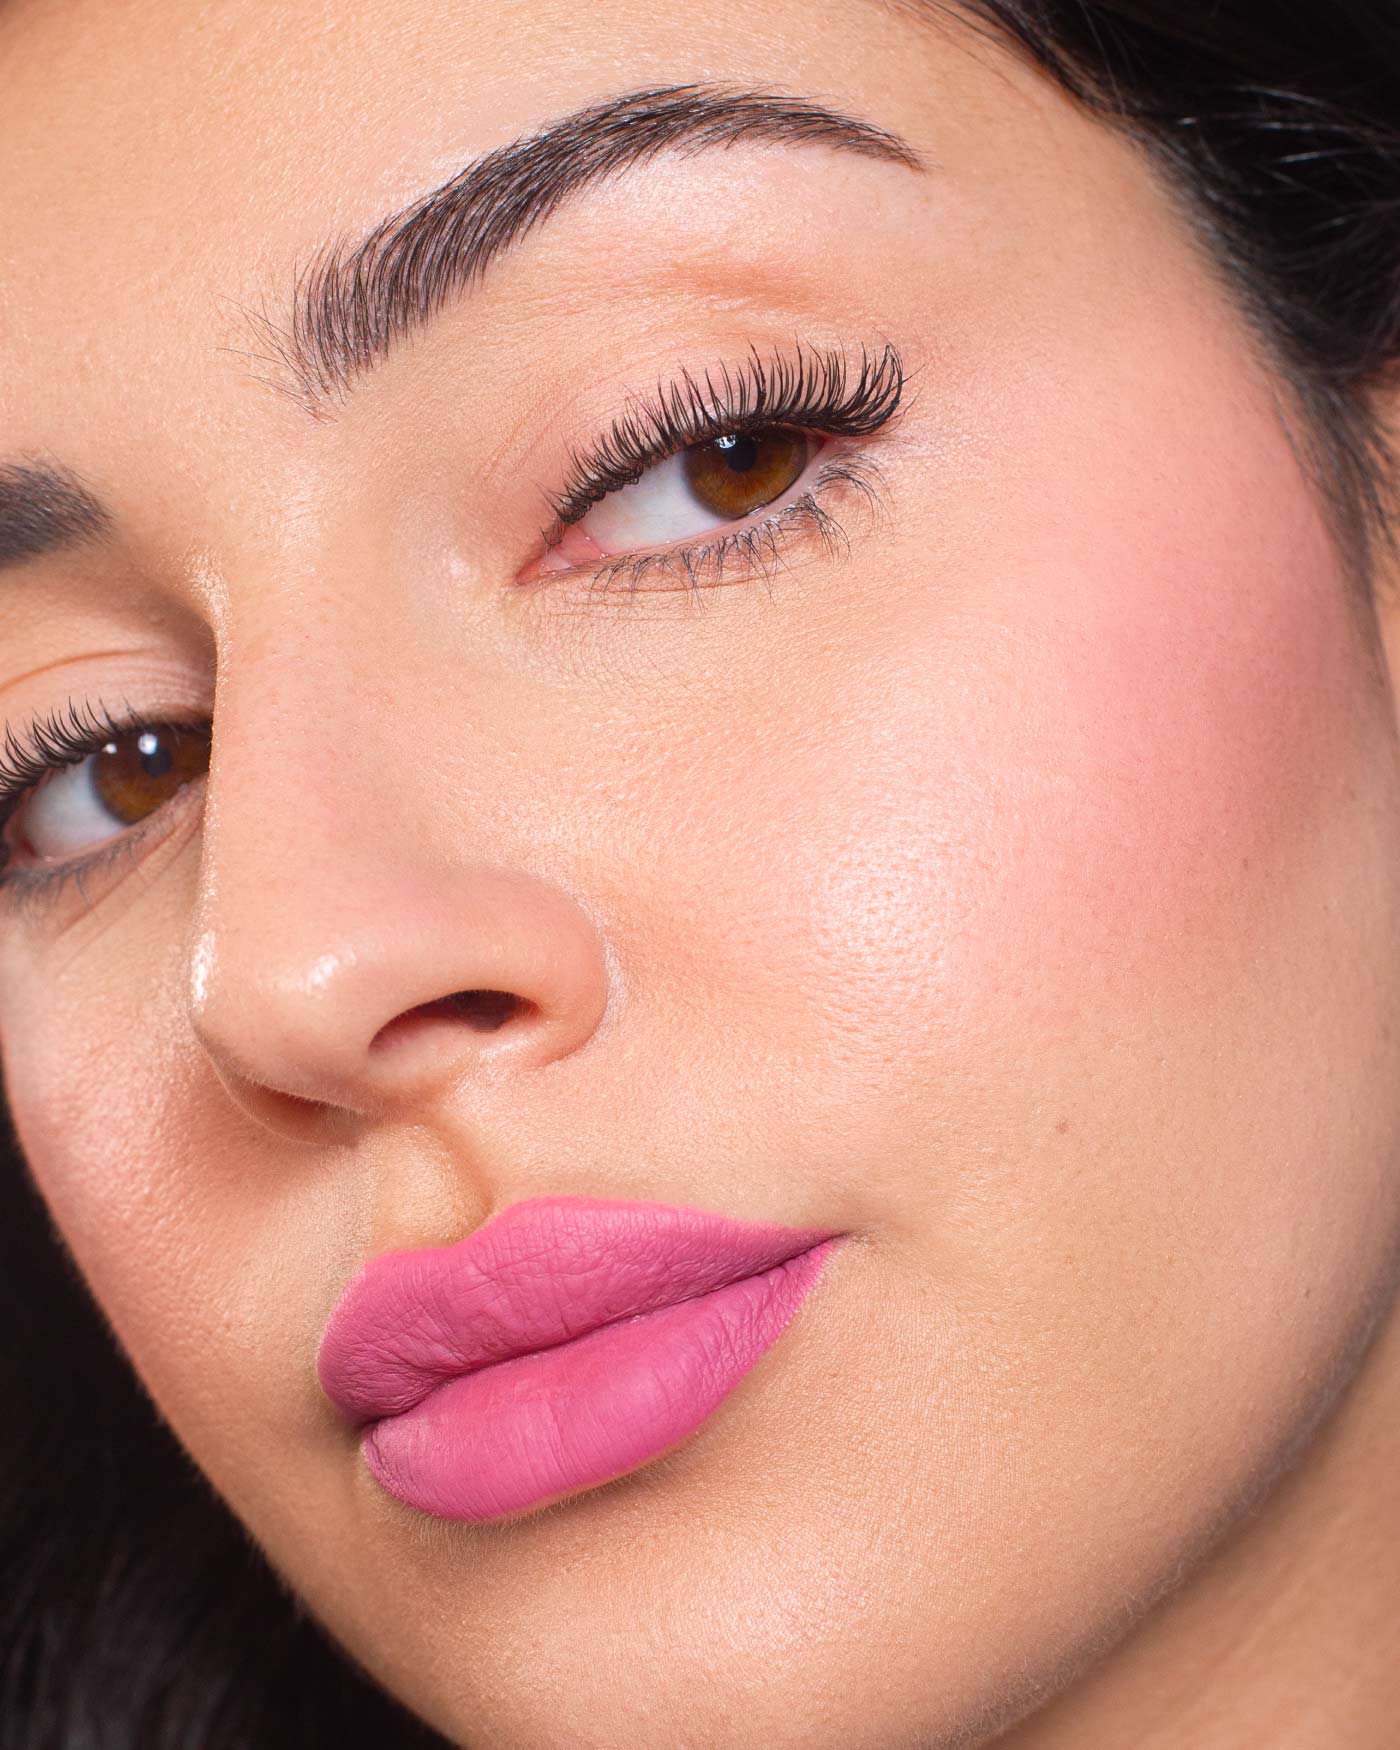 HYPNOTIZE LIQUID LIP & CHEEK - Lipstick - Astra Make-Up